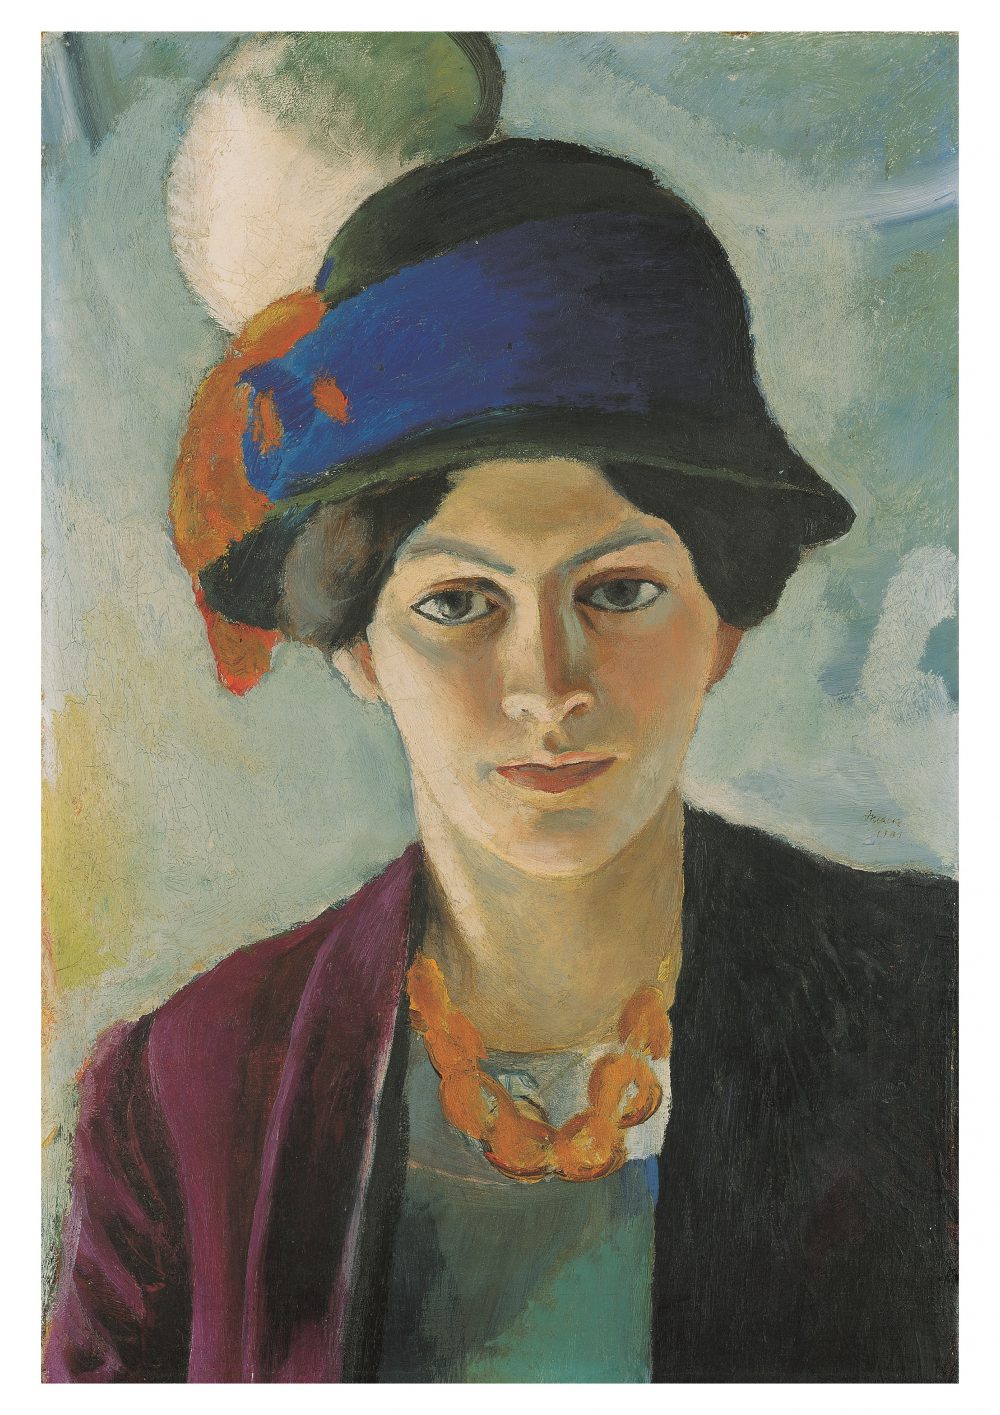 August Macke, Frau des Künstlers mit Hut (Detail), 1909, 50,2 x 43,5 cm; © LWL-Museum für Kunst und Kultur (Westfälisches Landesmuseum)/Macke Archiv